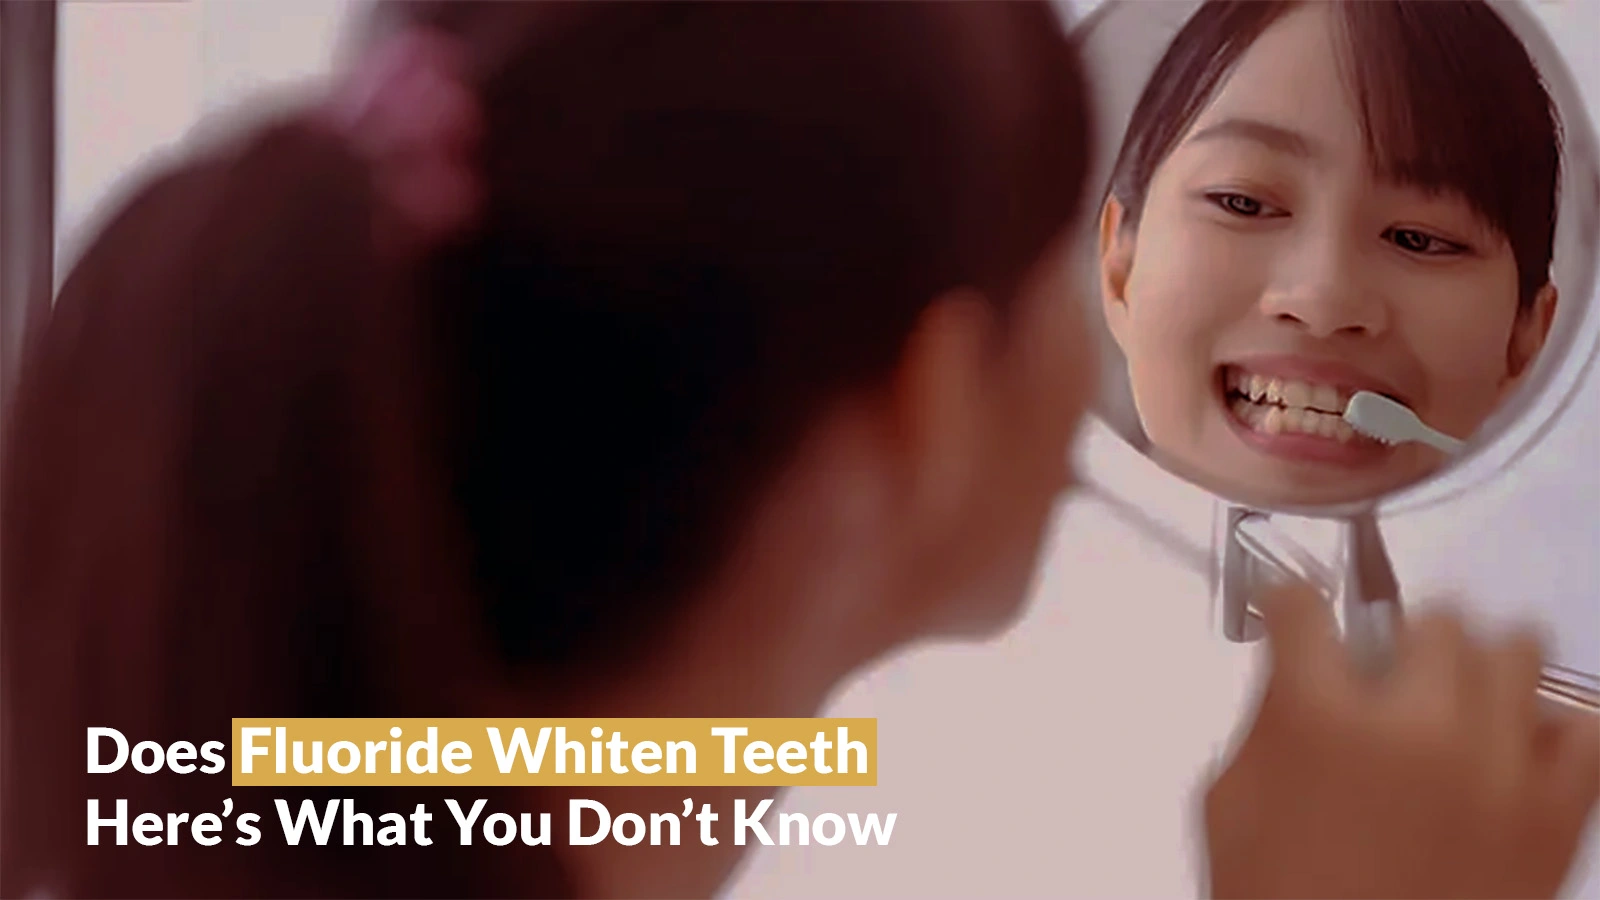 Does Fluoride Whiten Teeth? Sherman Oaks Smile Studio